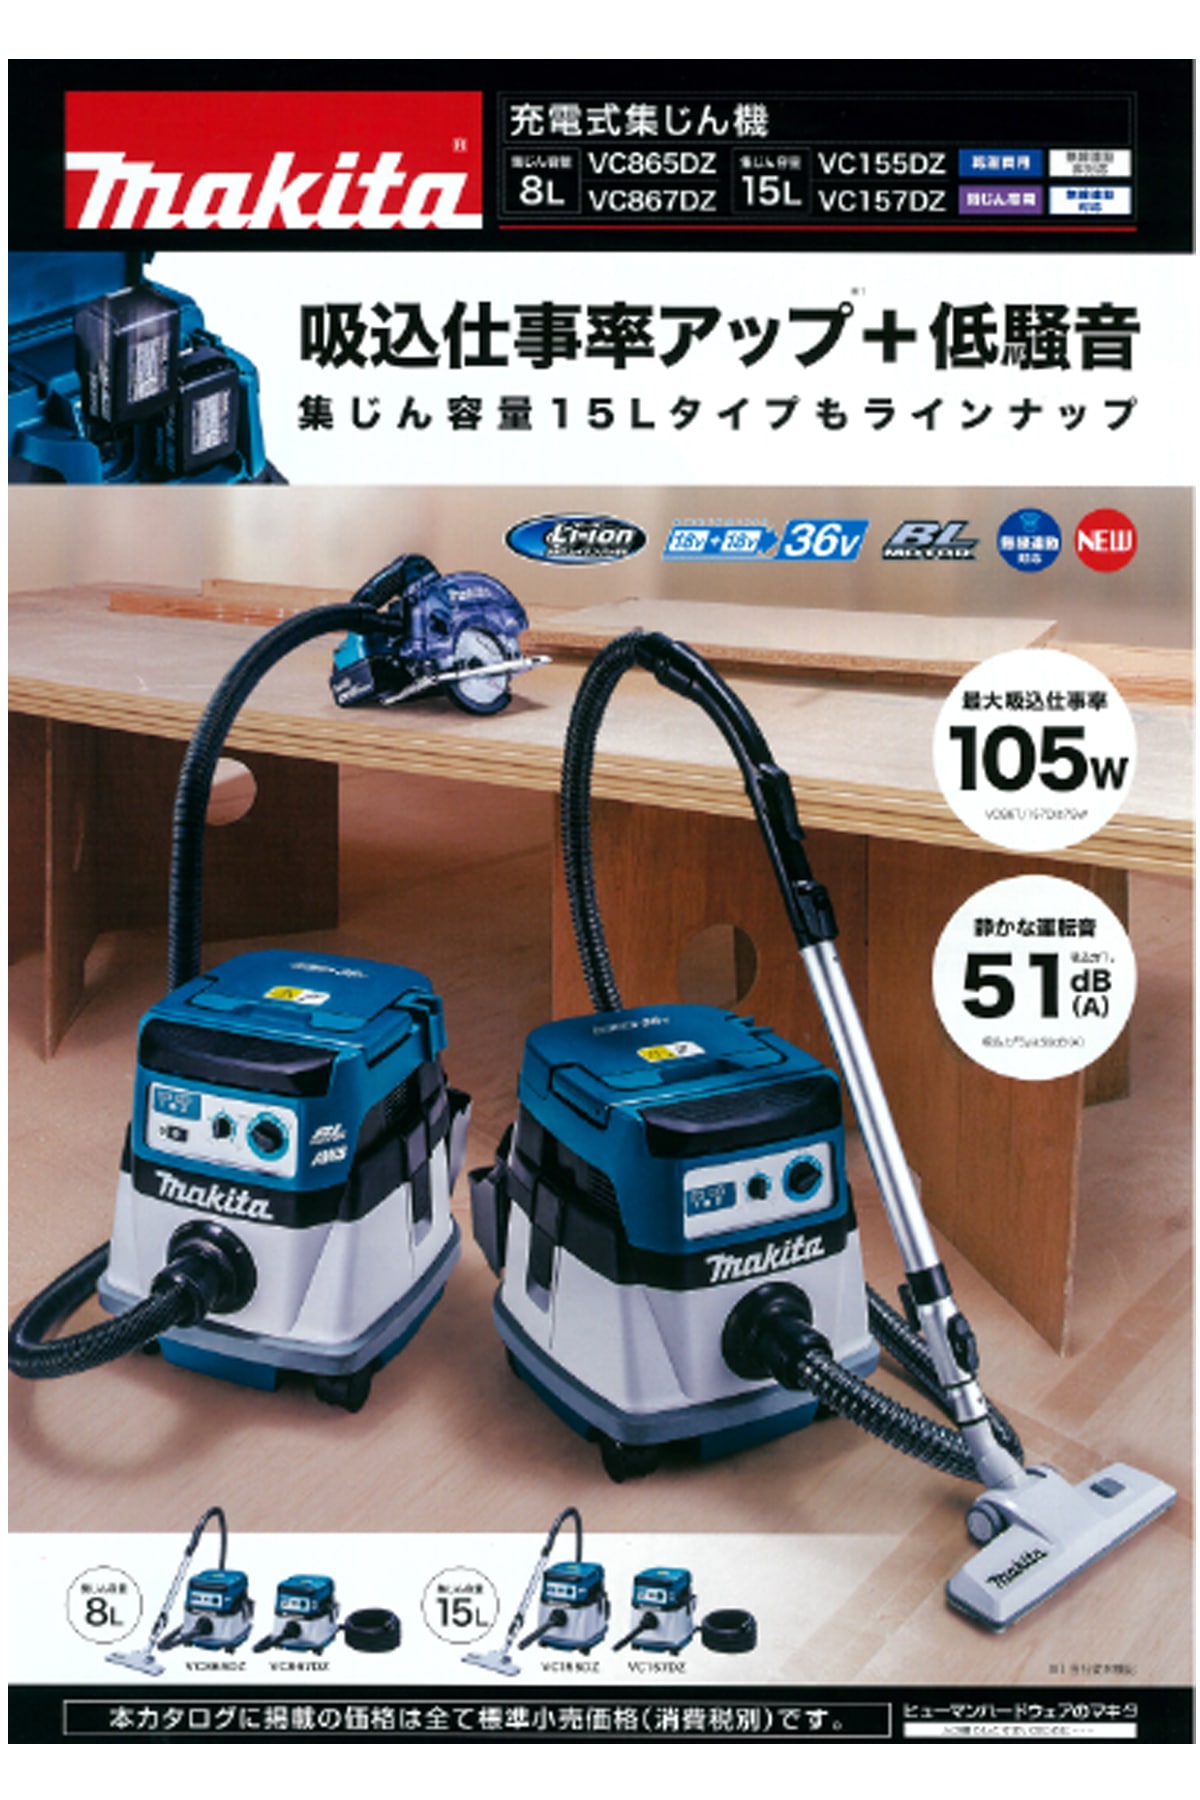 マキタ(Makita) 集じん機(乾湿両用) 15L VC1500 - 工具、DIY用品